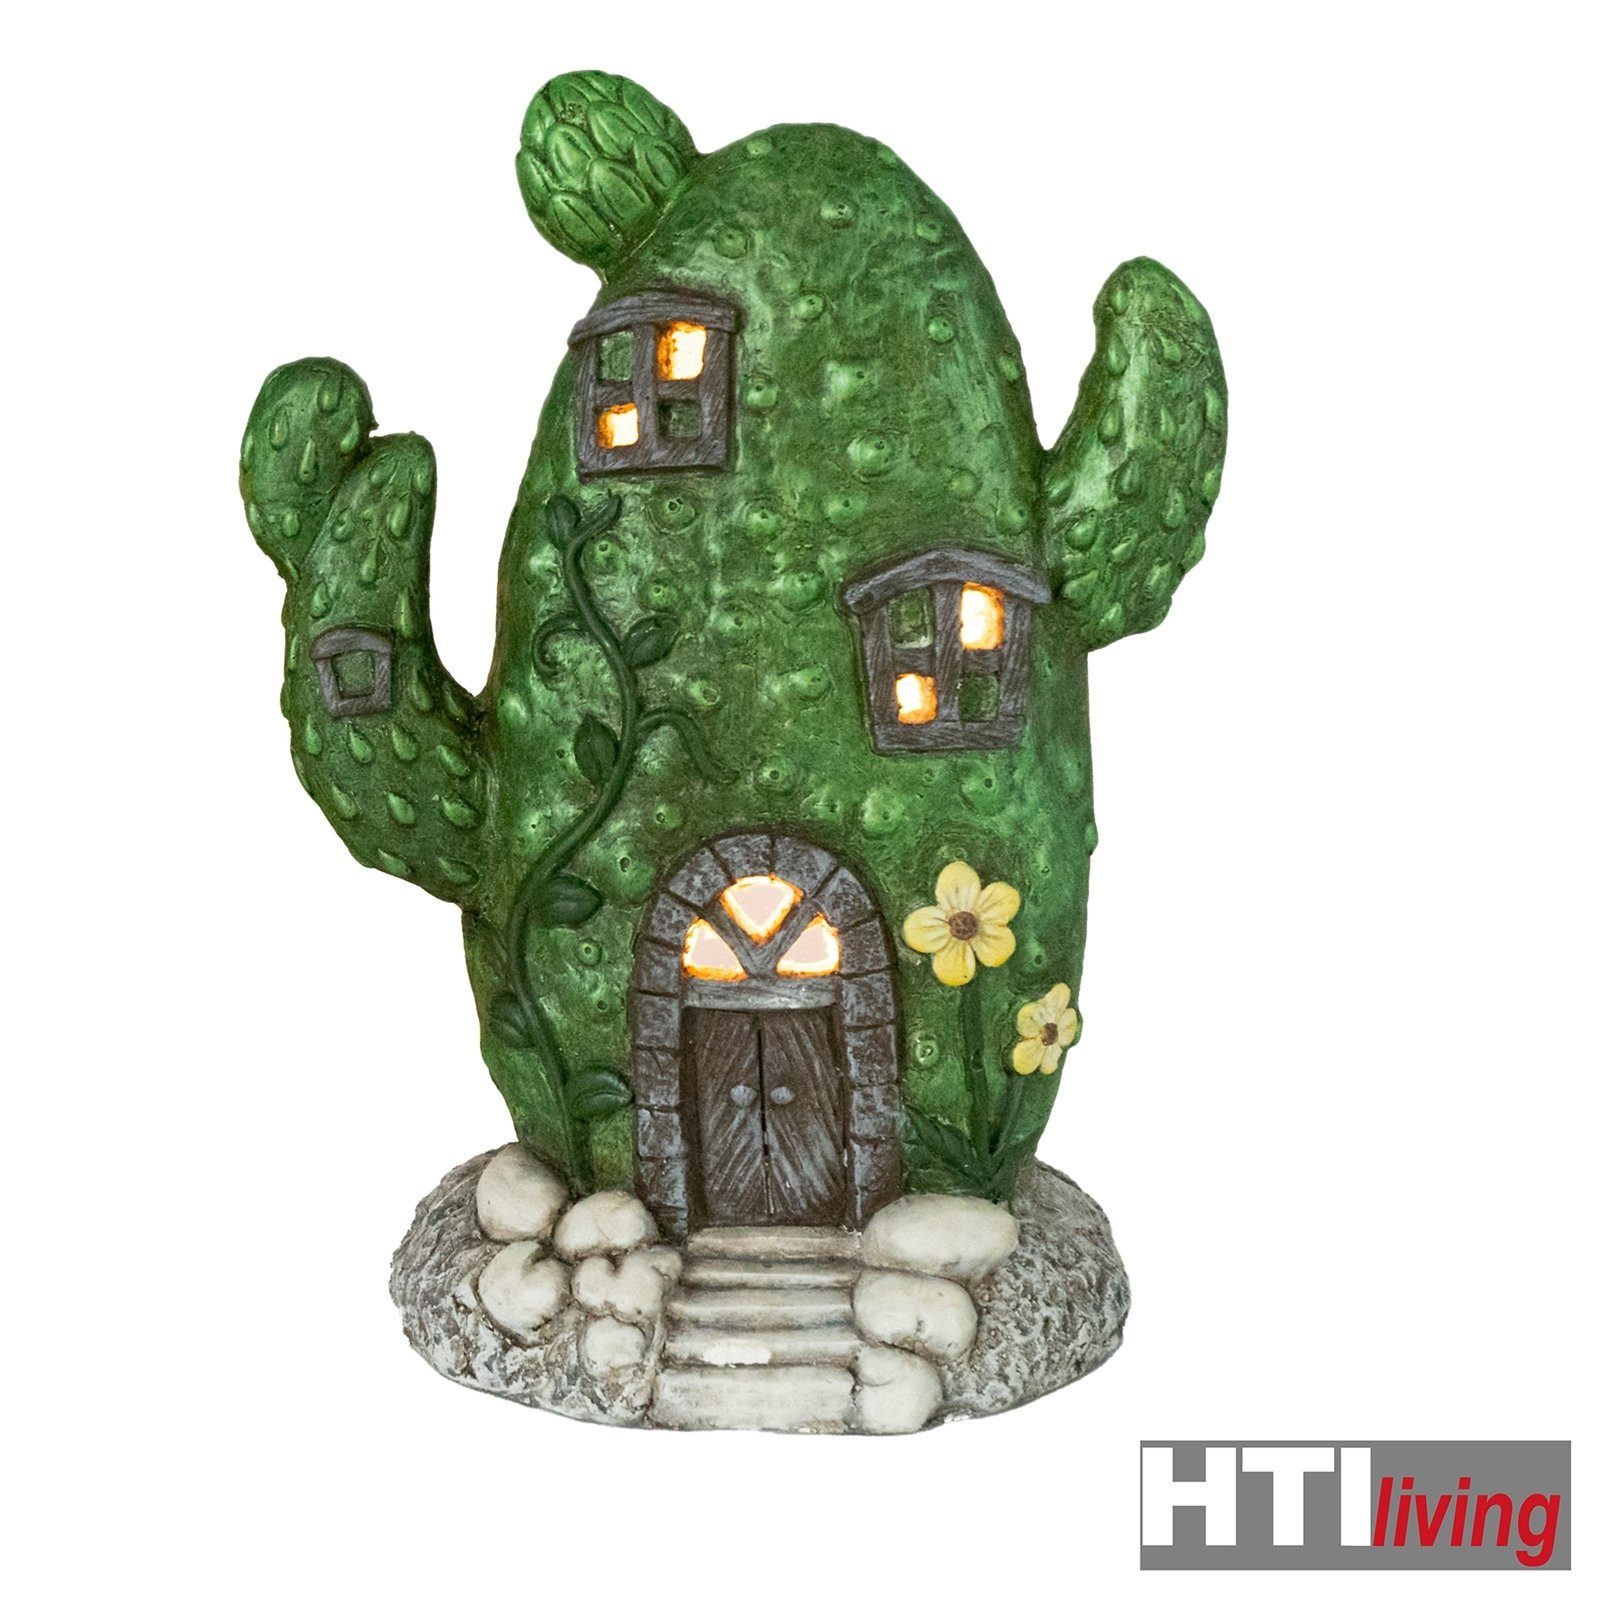 St) HTI-Living Keramik-Windlicht Windlicht (1 Kaktus